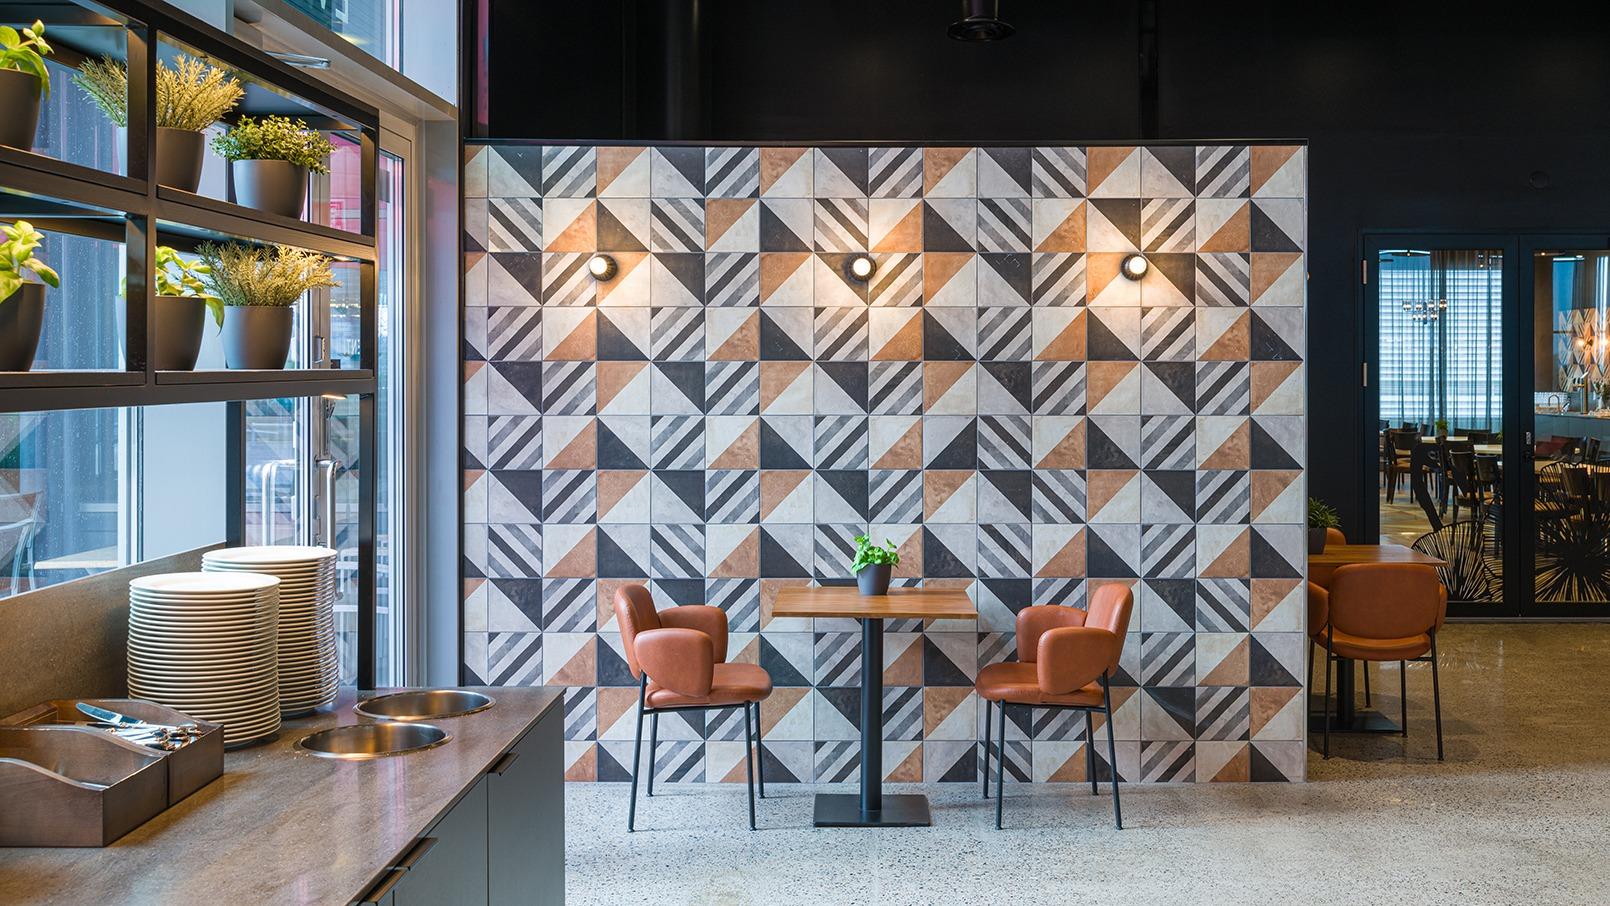 Rune & Berg Designin suunnittelema aamiais- ja ravintolasali Sokos Hotelli Flamingossa